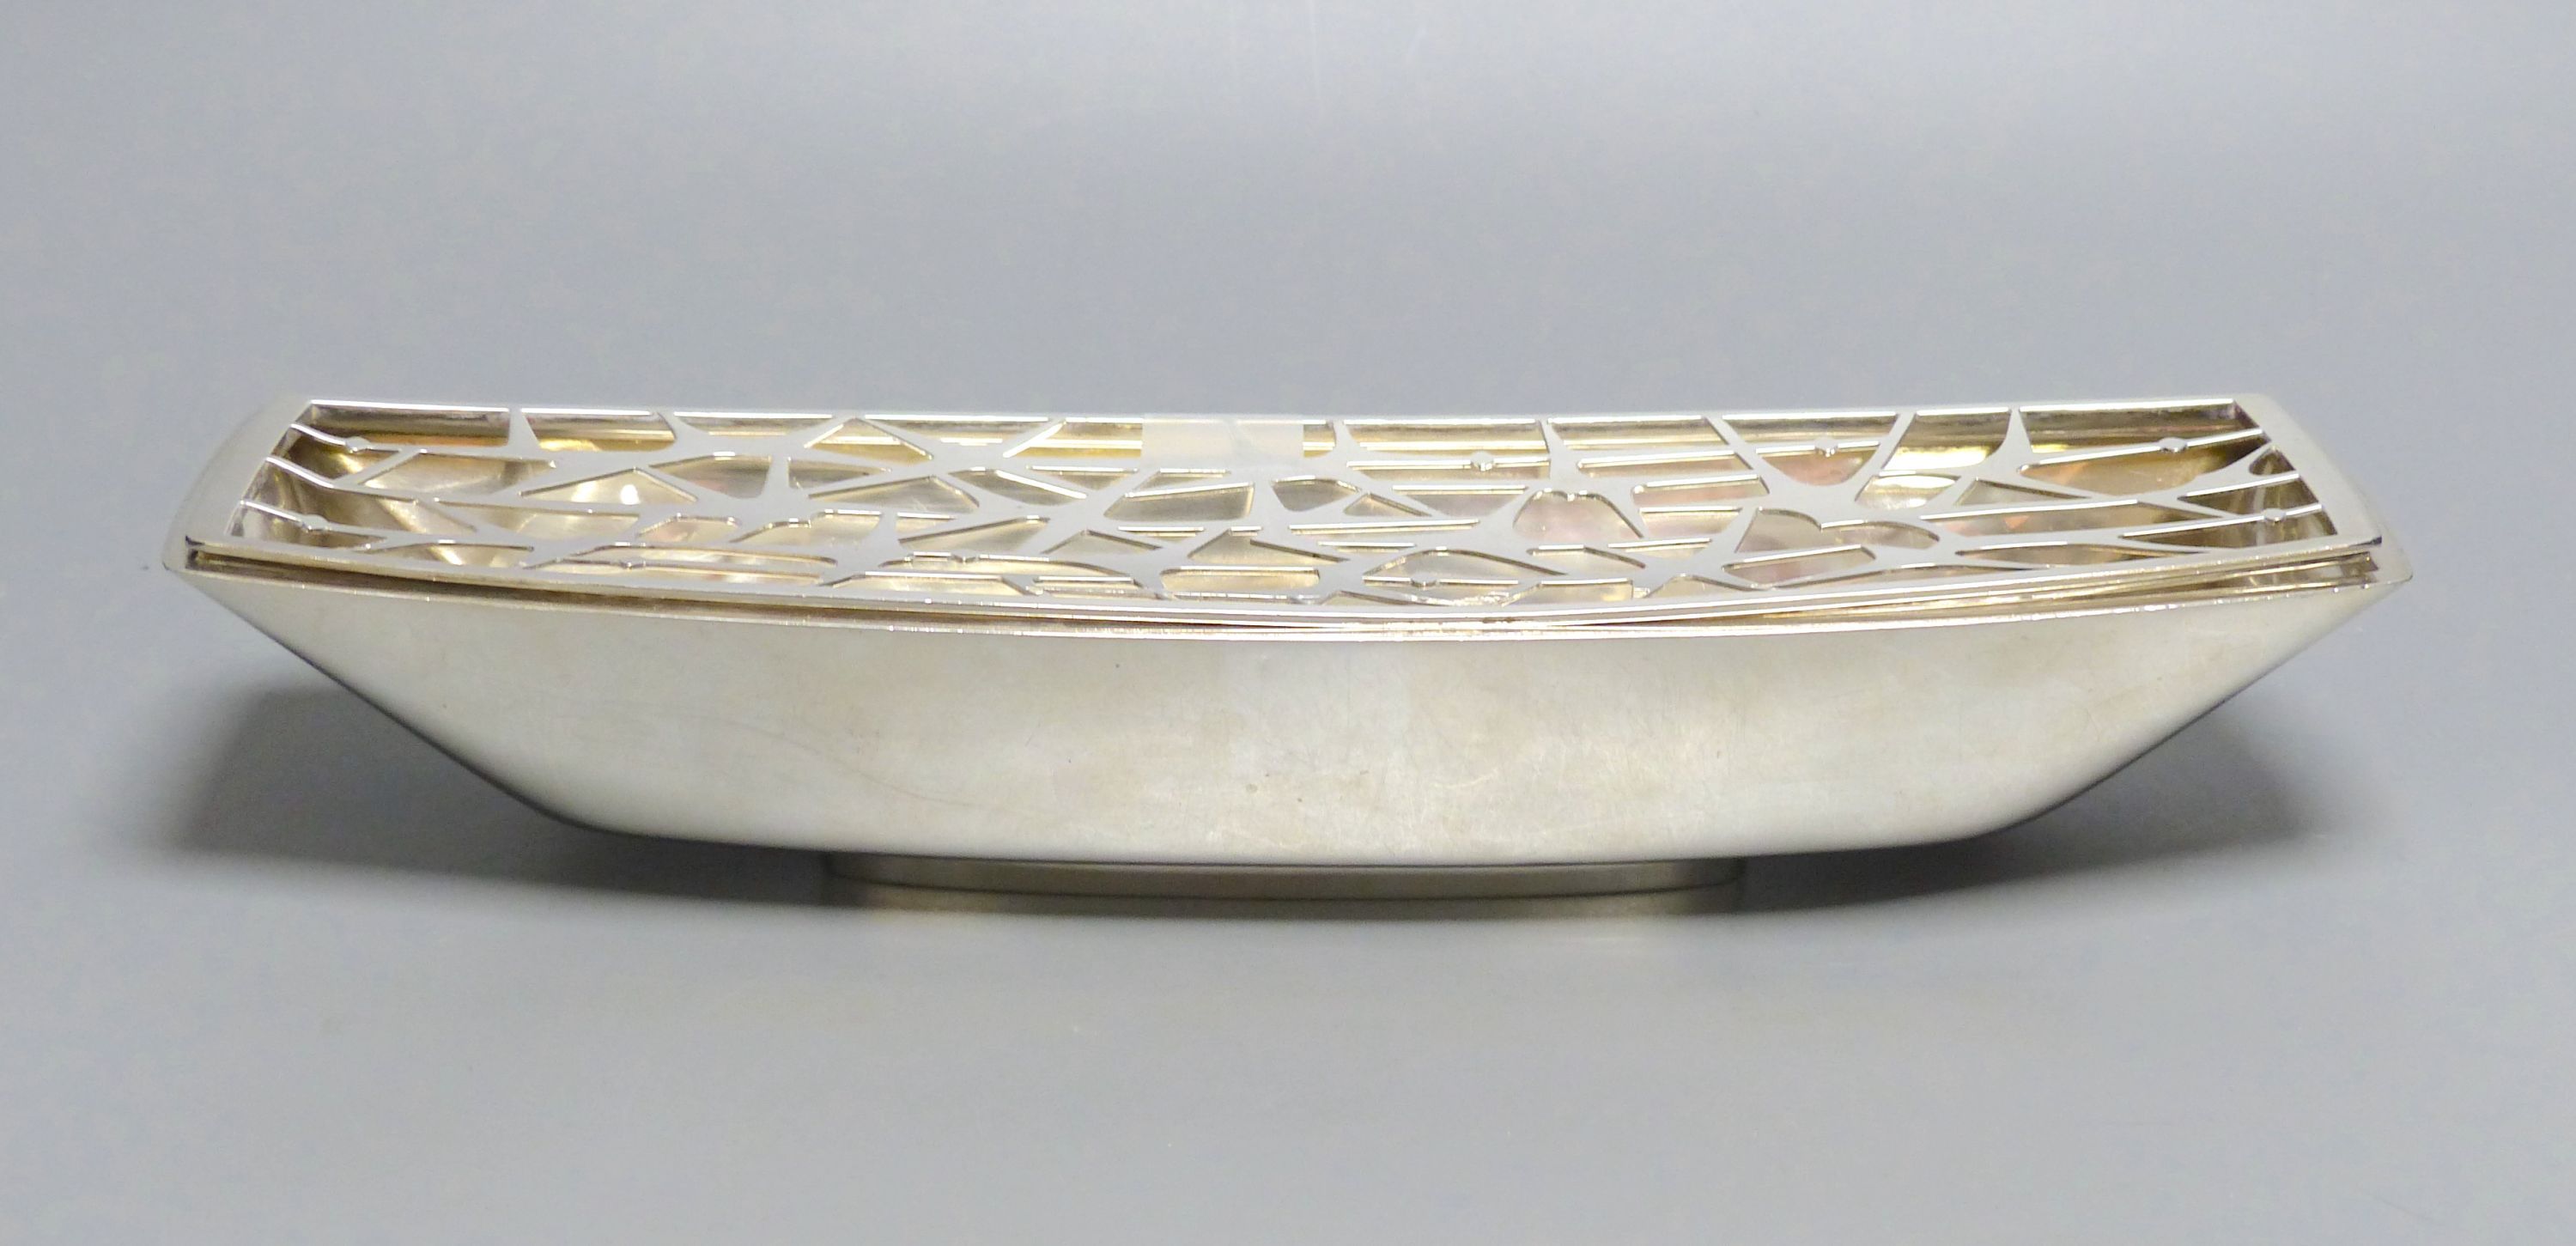 A. G. Styles for Garrard & Co, an unusual silver boat-shaped presentation flower trough, 28.94oz